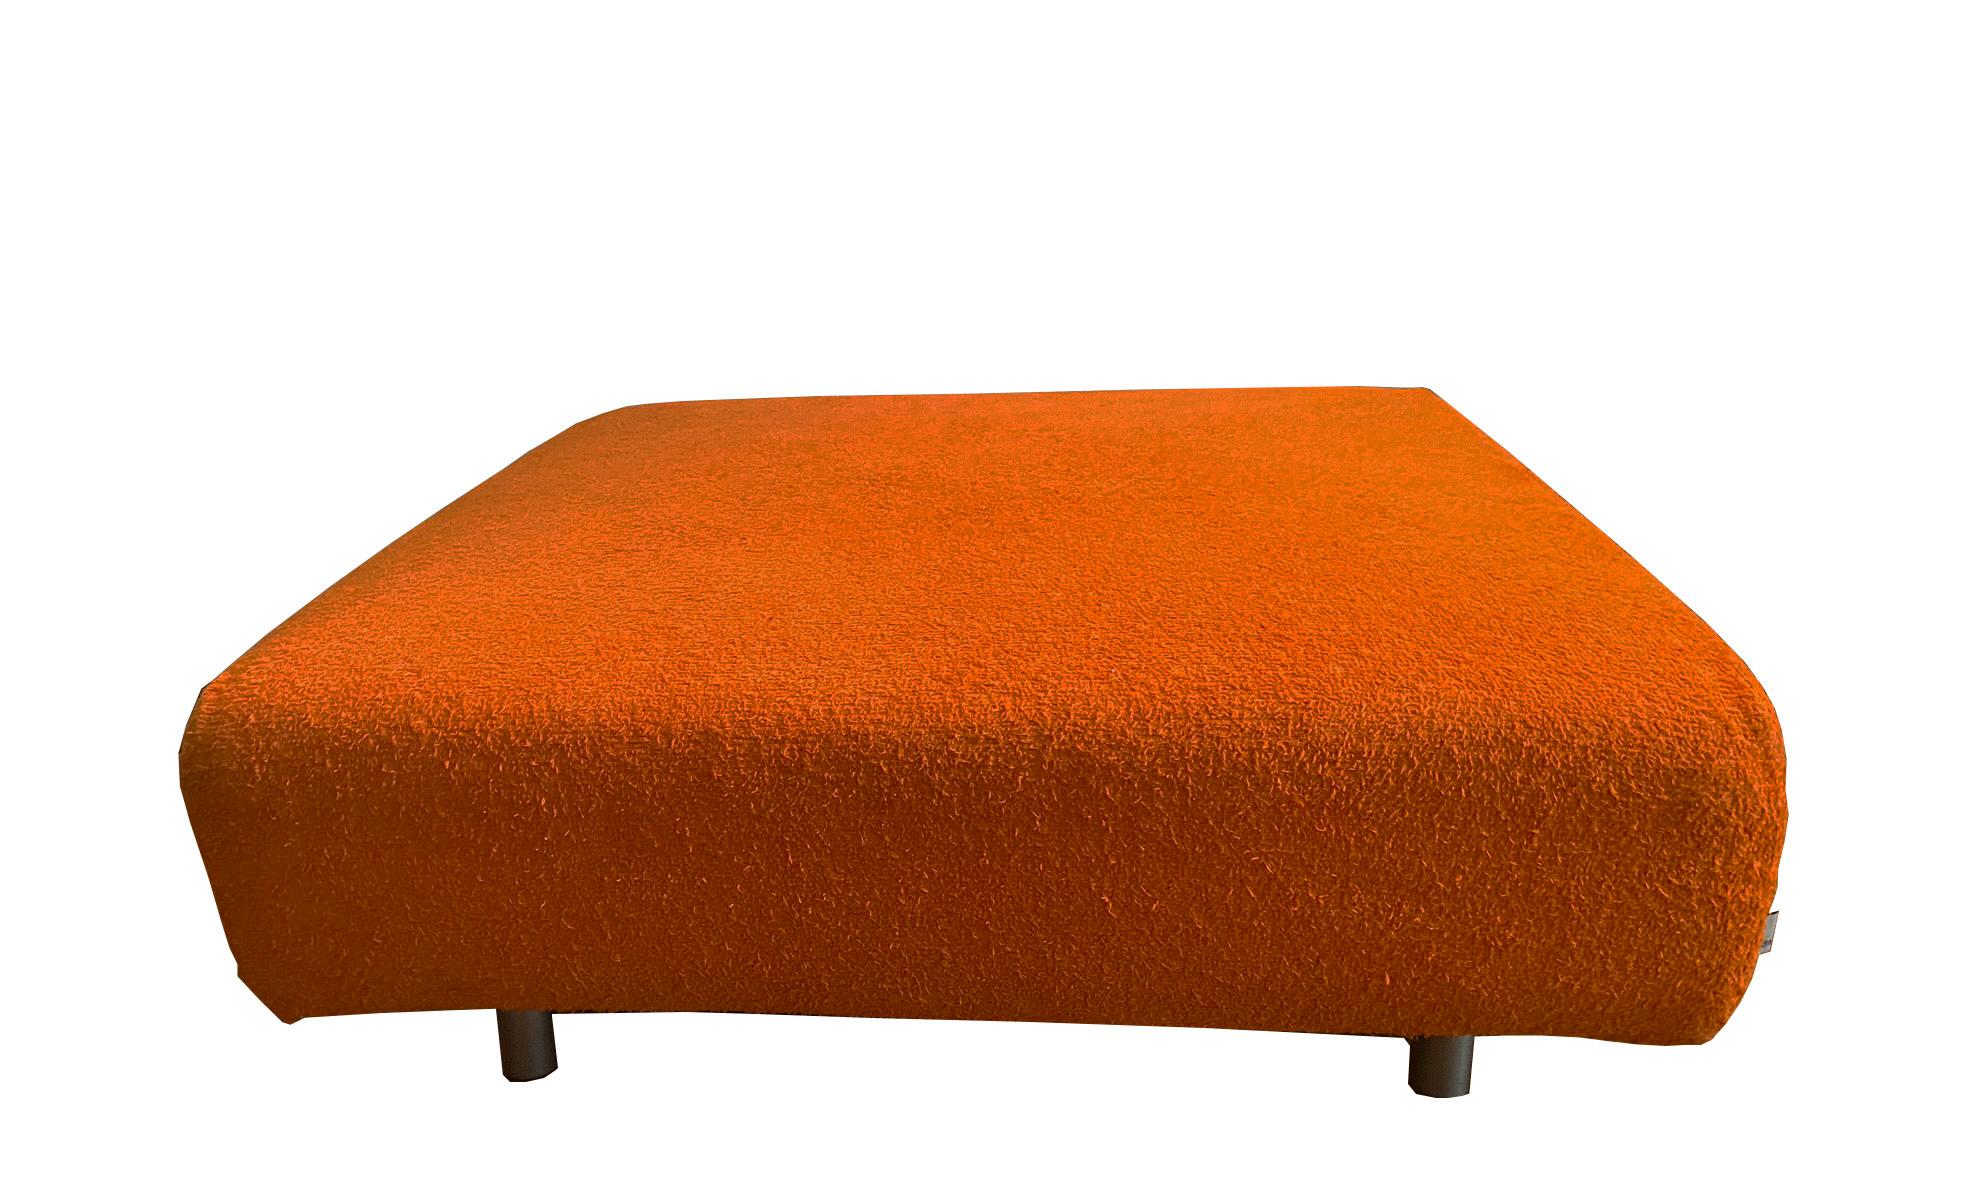 Seat/pouf in original Edra orange fabric, original label.